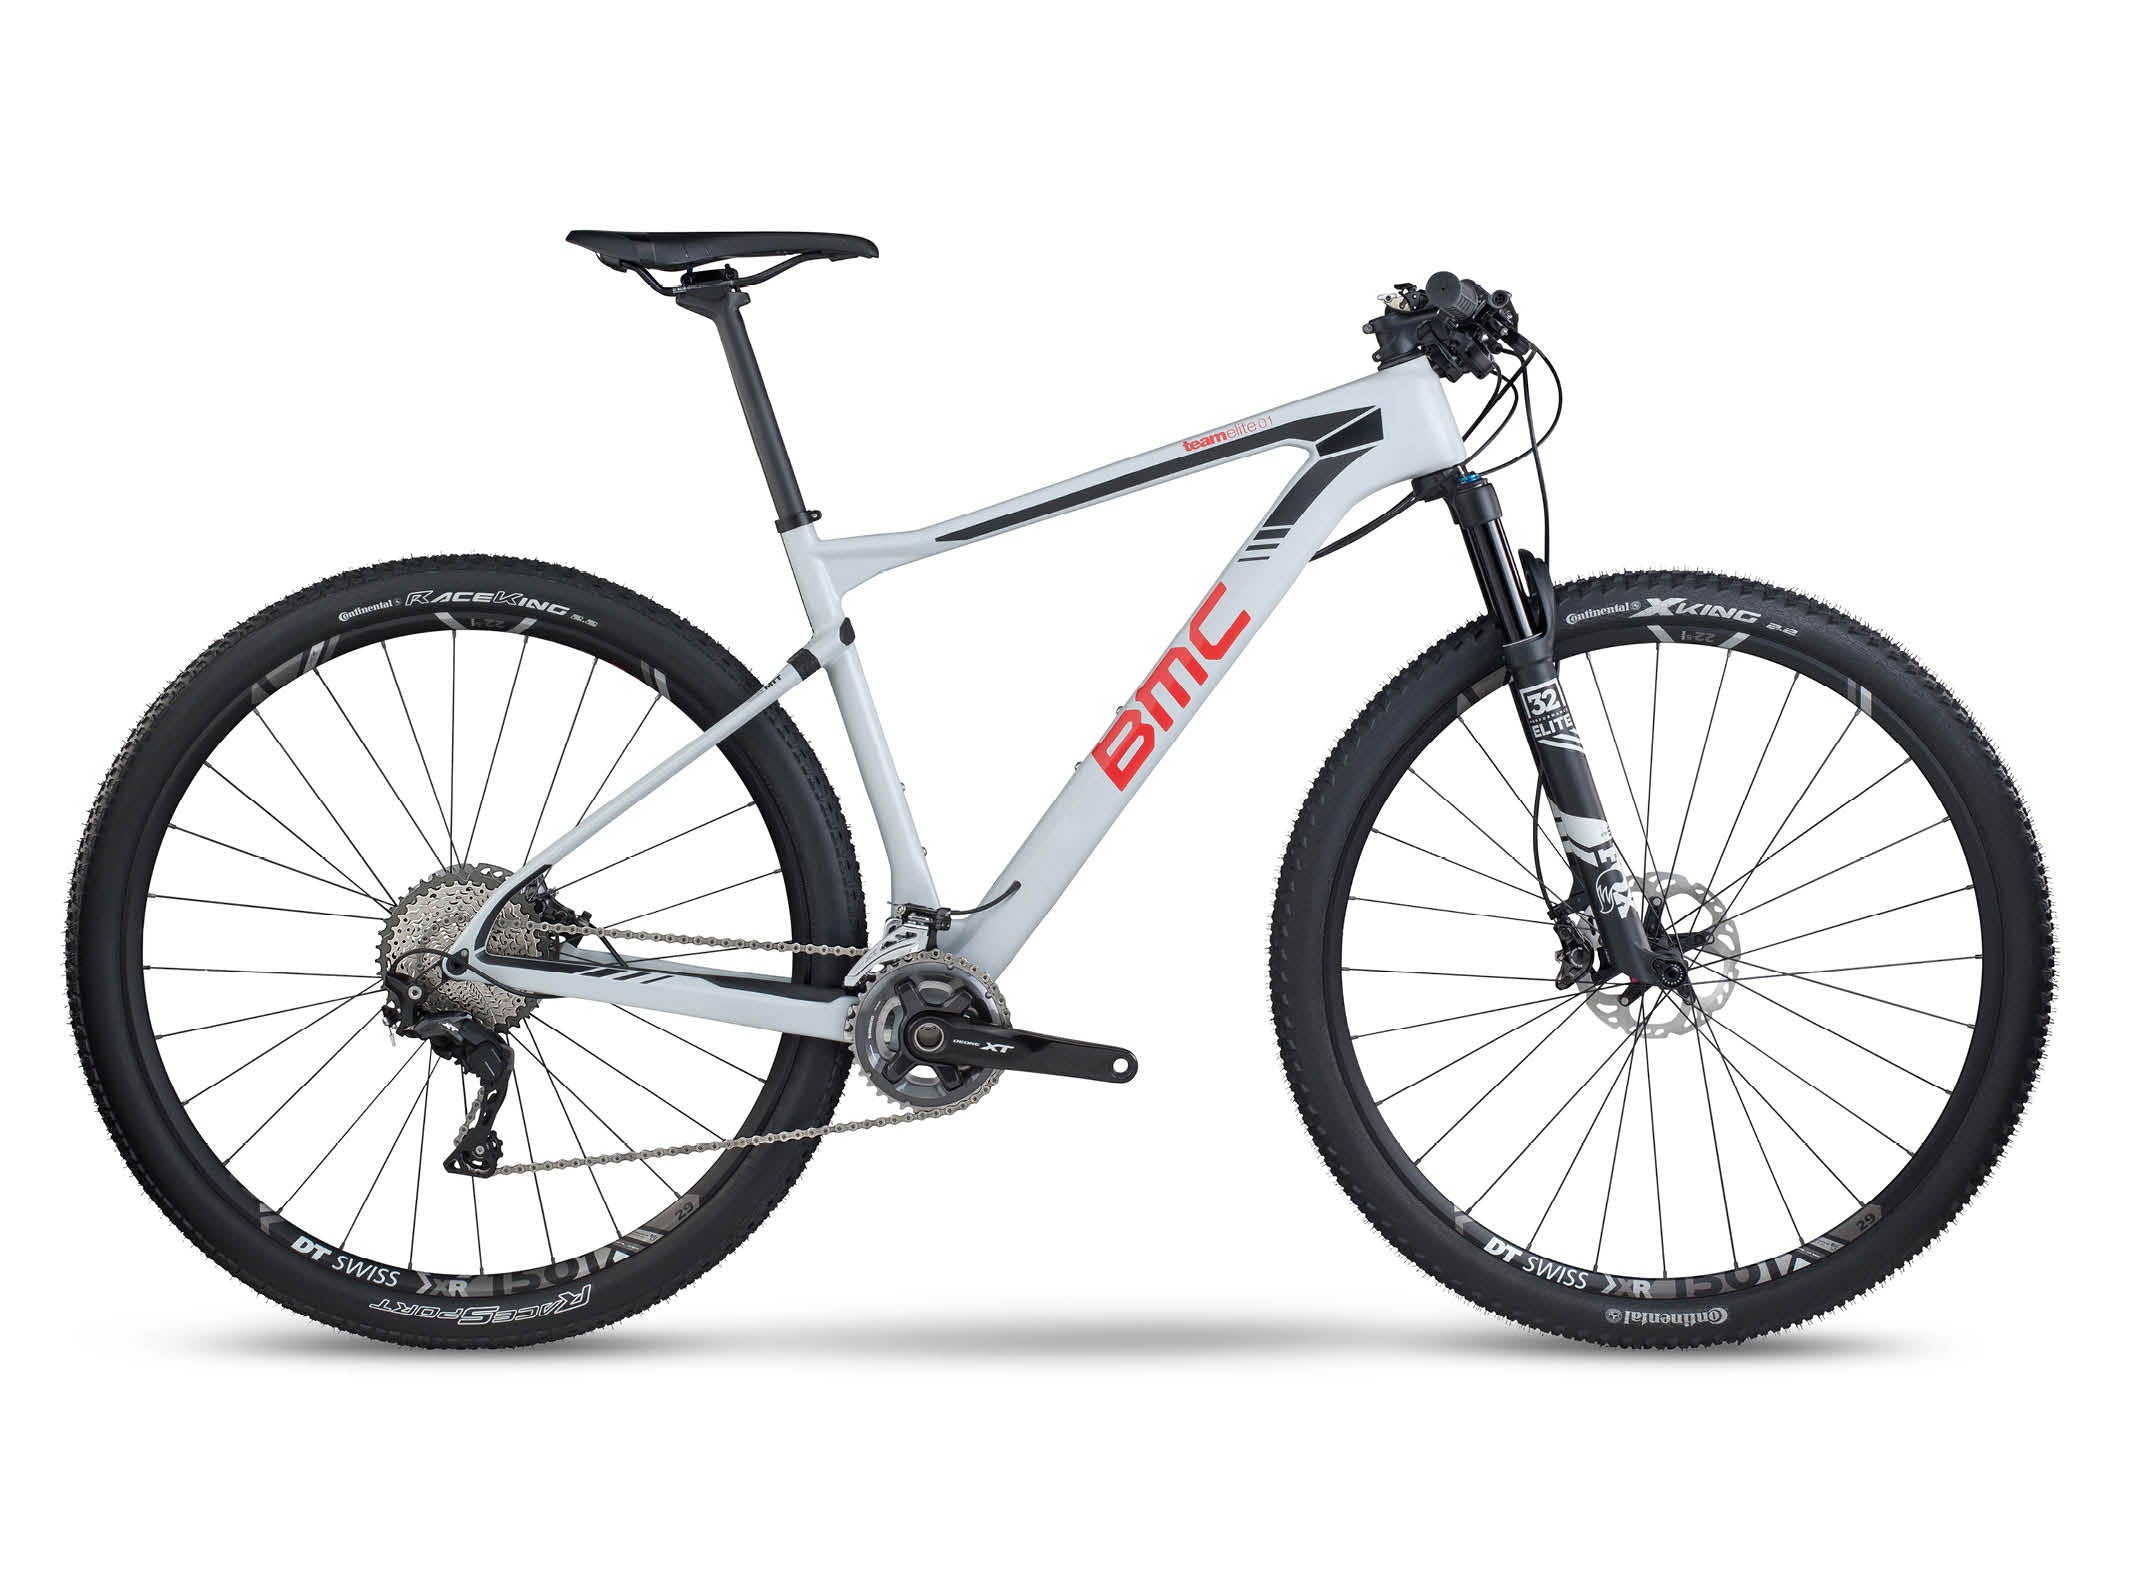 Teamelite 01 XT | BMC | bikes | Mountain, Mountain | Cross-Country